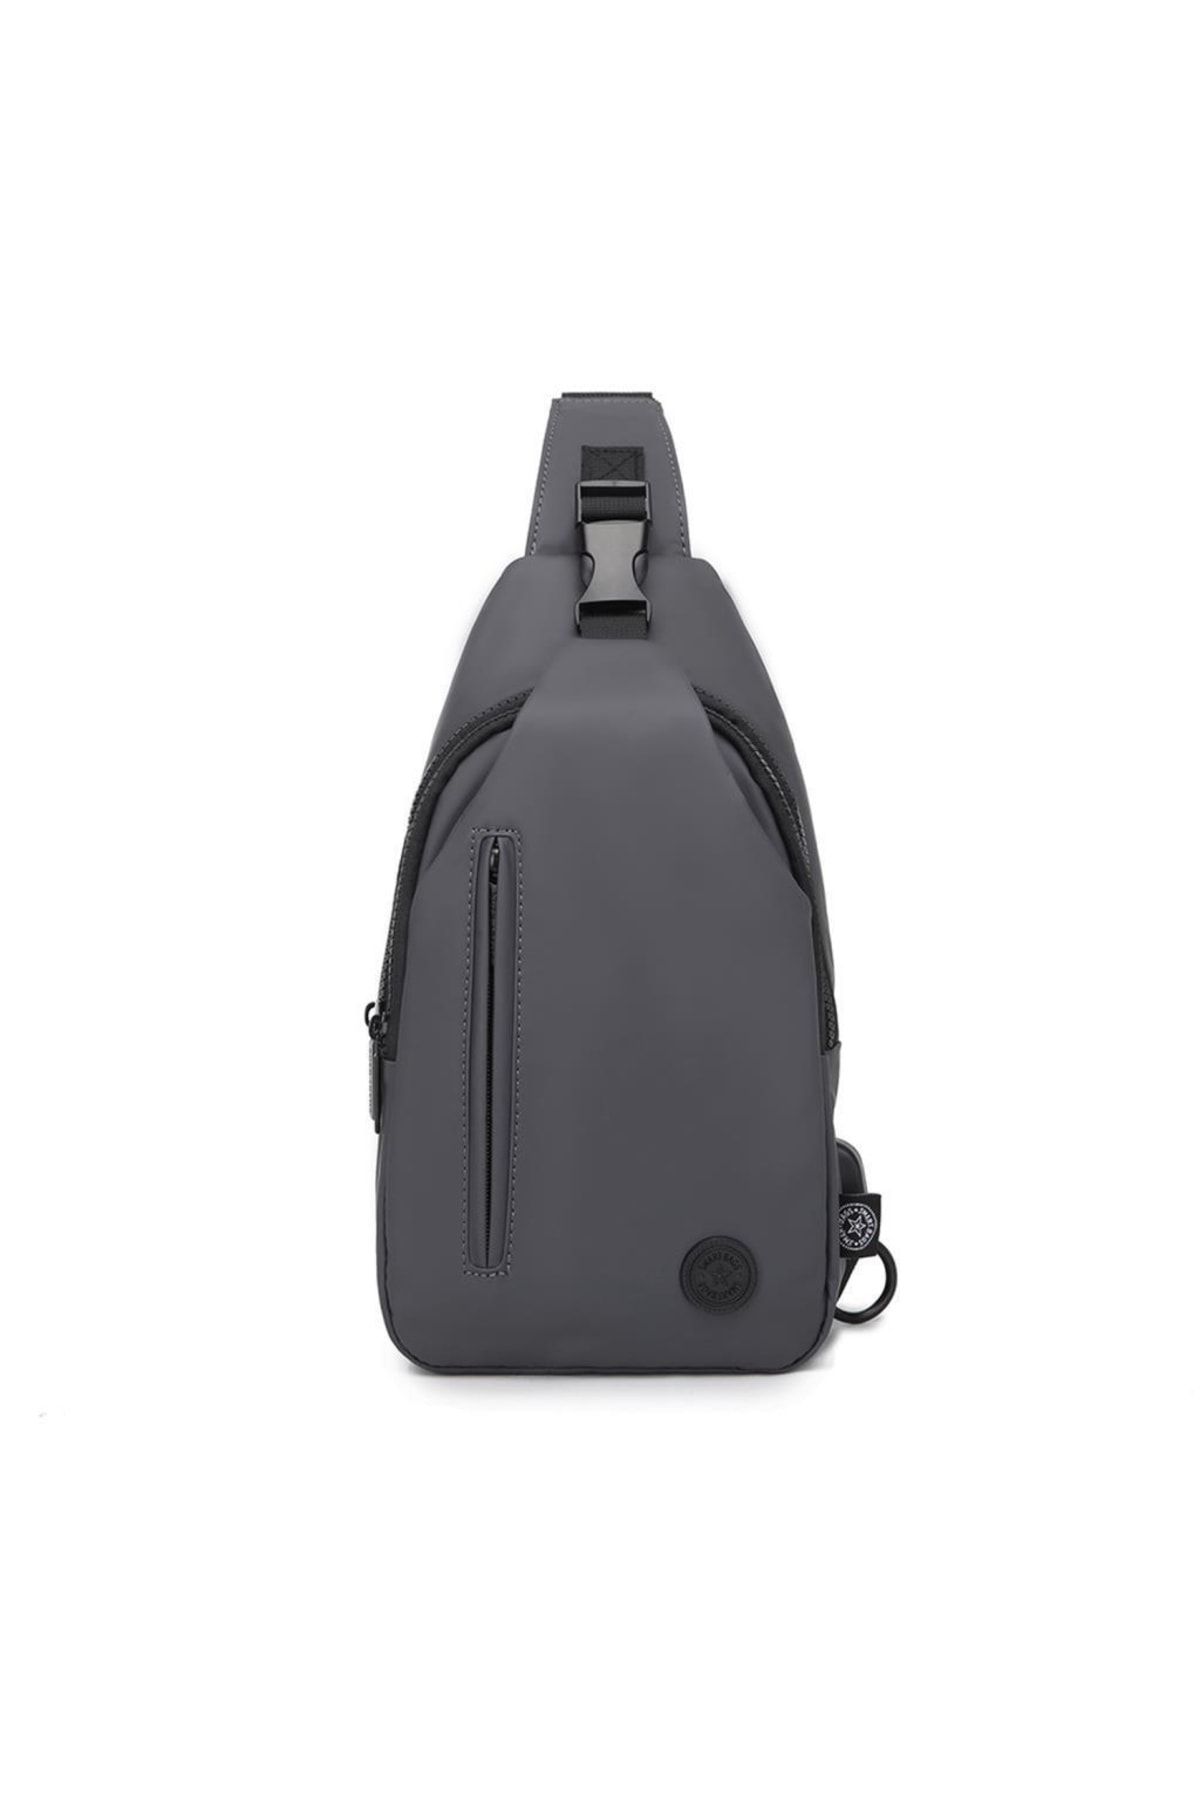 Smart Bags Gumi Kumaş Uniseks Bodybag Omuz Çantası 8654 K.gri